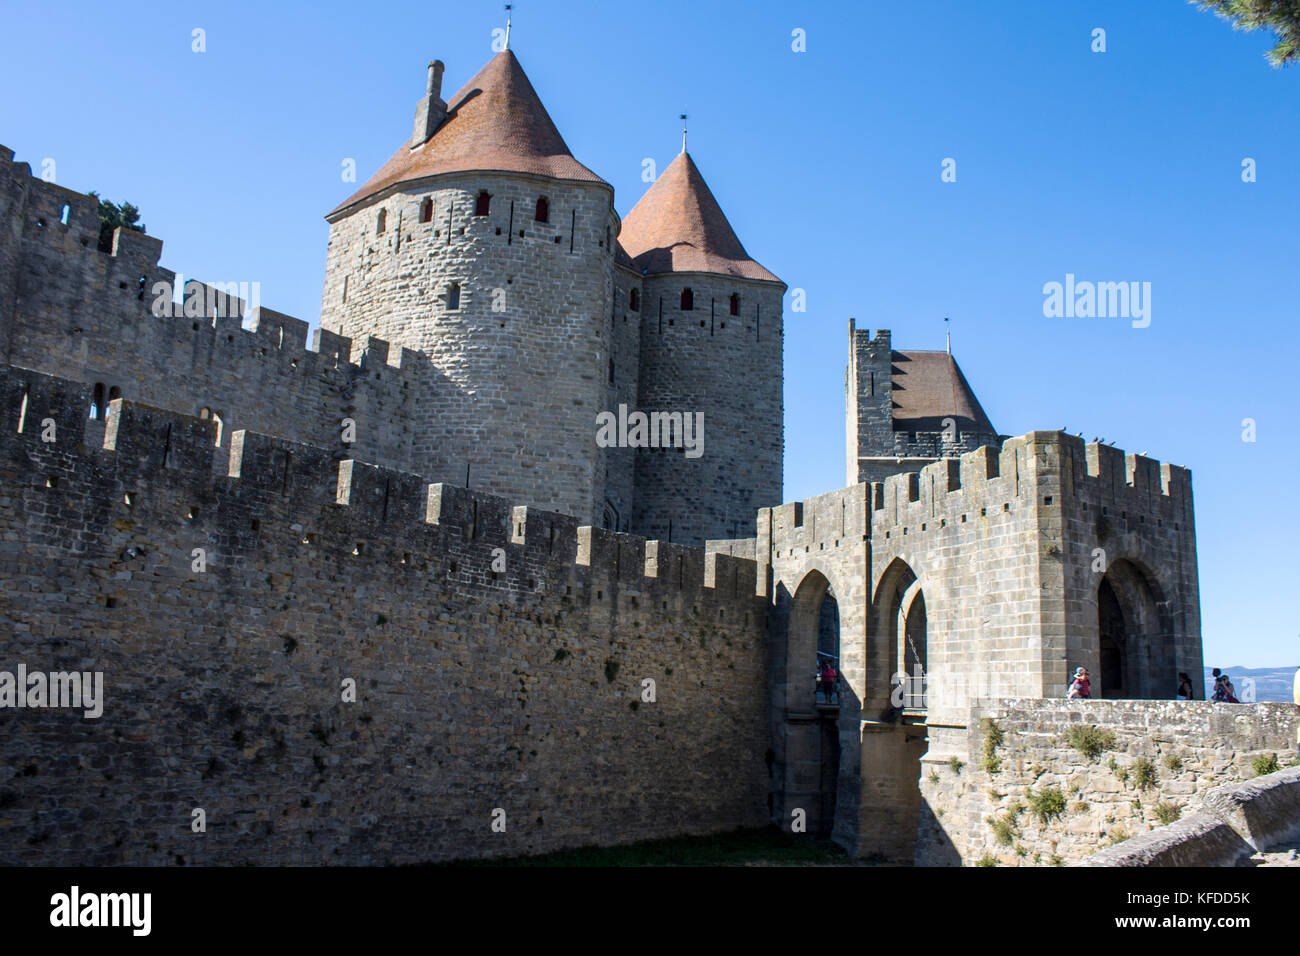 Torri e mura della Cite de Carcassonne, una fortezza medievale Citadel si trova nella regione Languedoc-Roussillon. Un sito del Patrimonio mondiale dal 1997 Foto Stock